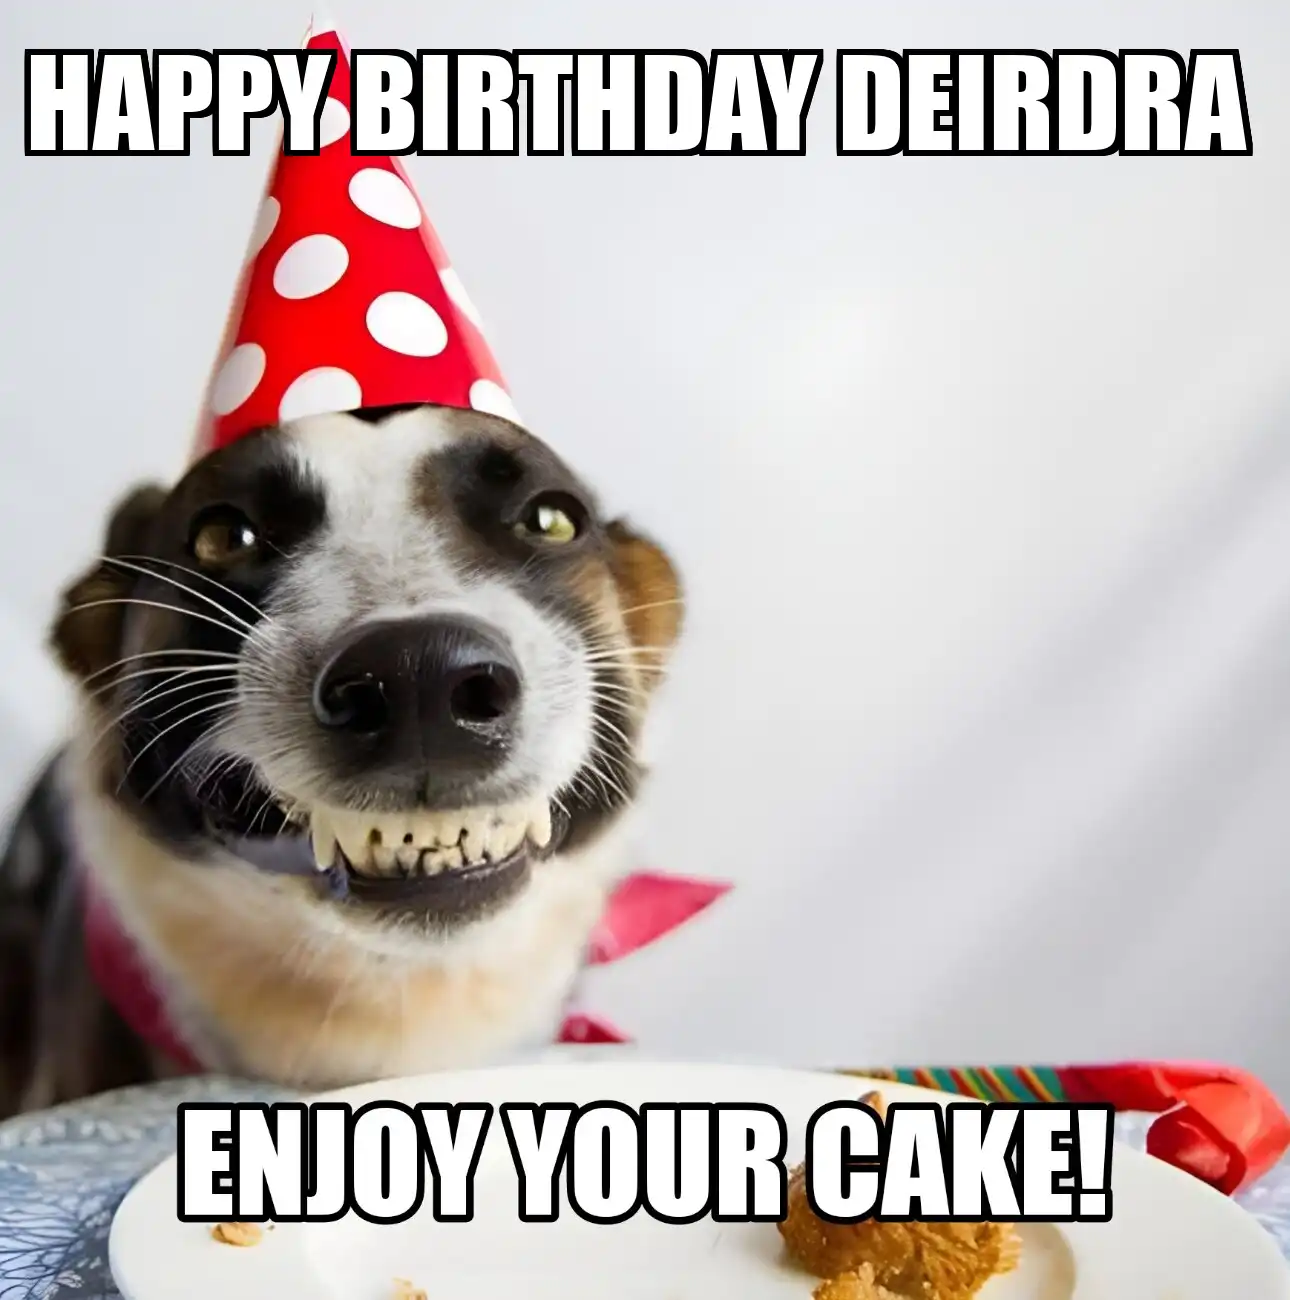 Happy Birthday Deirdra Enjoy Your Cake Dog Meme